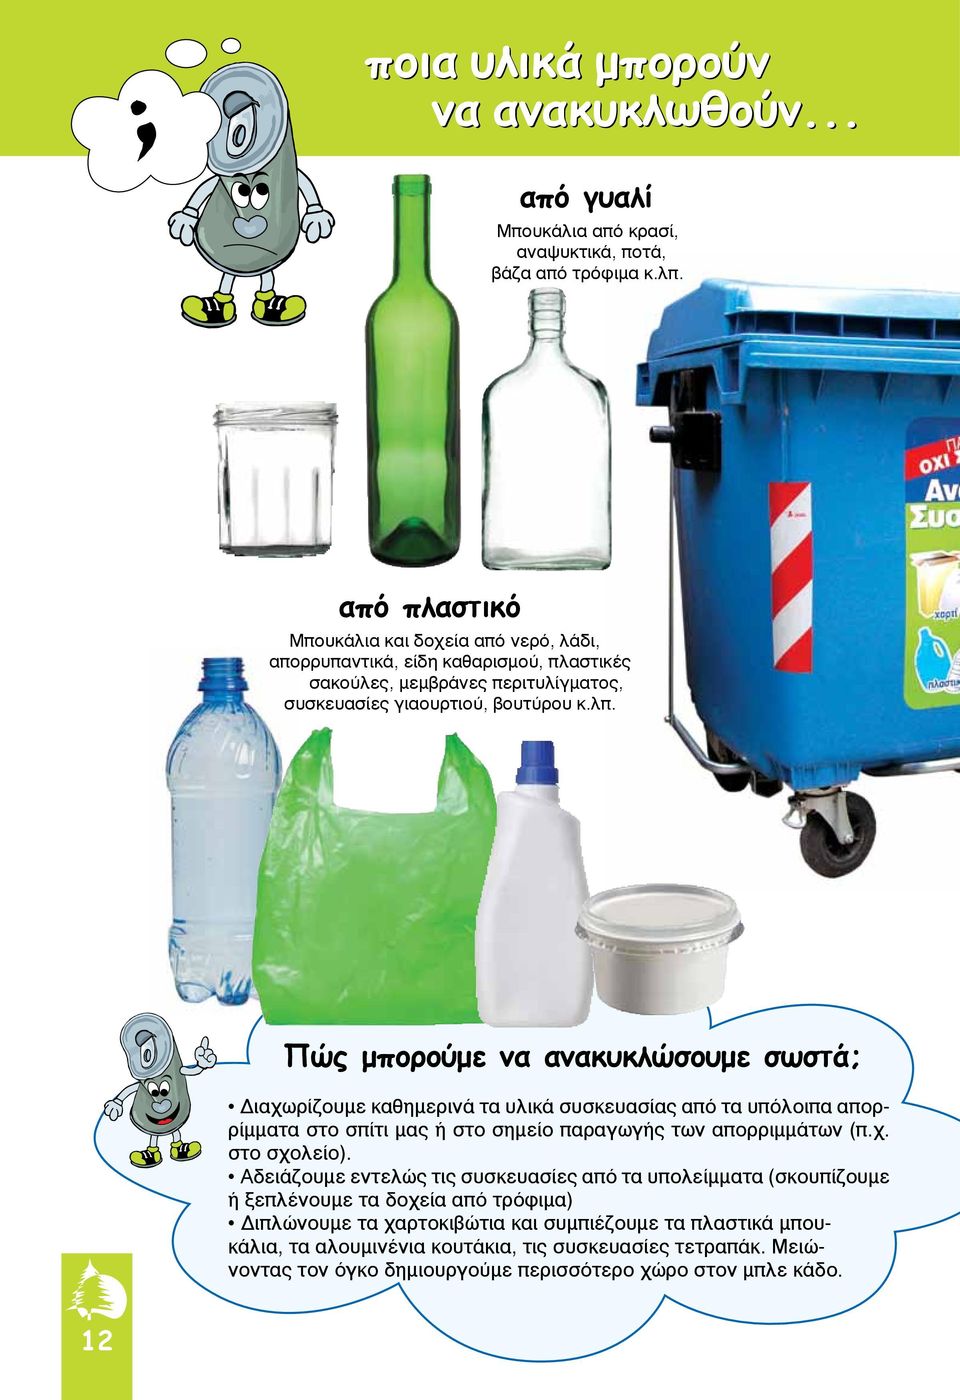 Πώς μπορούμε να ανακυκλώσουμε σωστά; Διαχωρίζουμε καθημερινά τα υλικά συσκευασίας από τα υπόλοιπα απορρίμματα στο σπίτι μας ή στο σημείο παραγωγής των απορριμμάτων (π.χ. στο σχολείο).